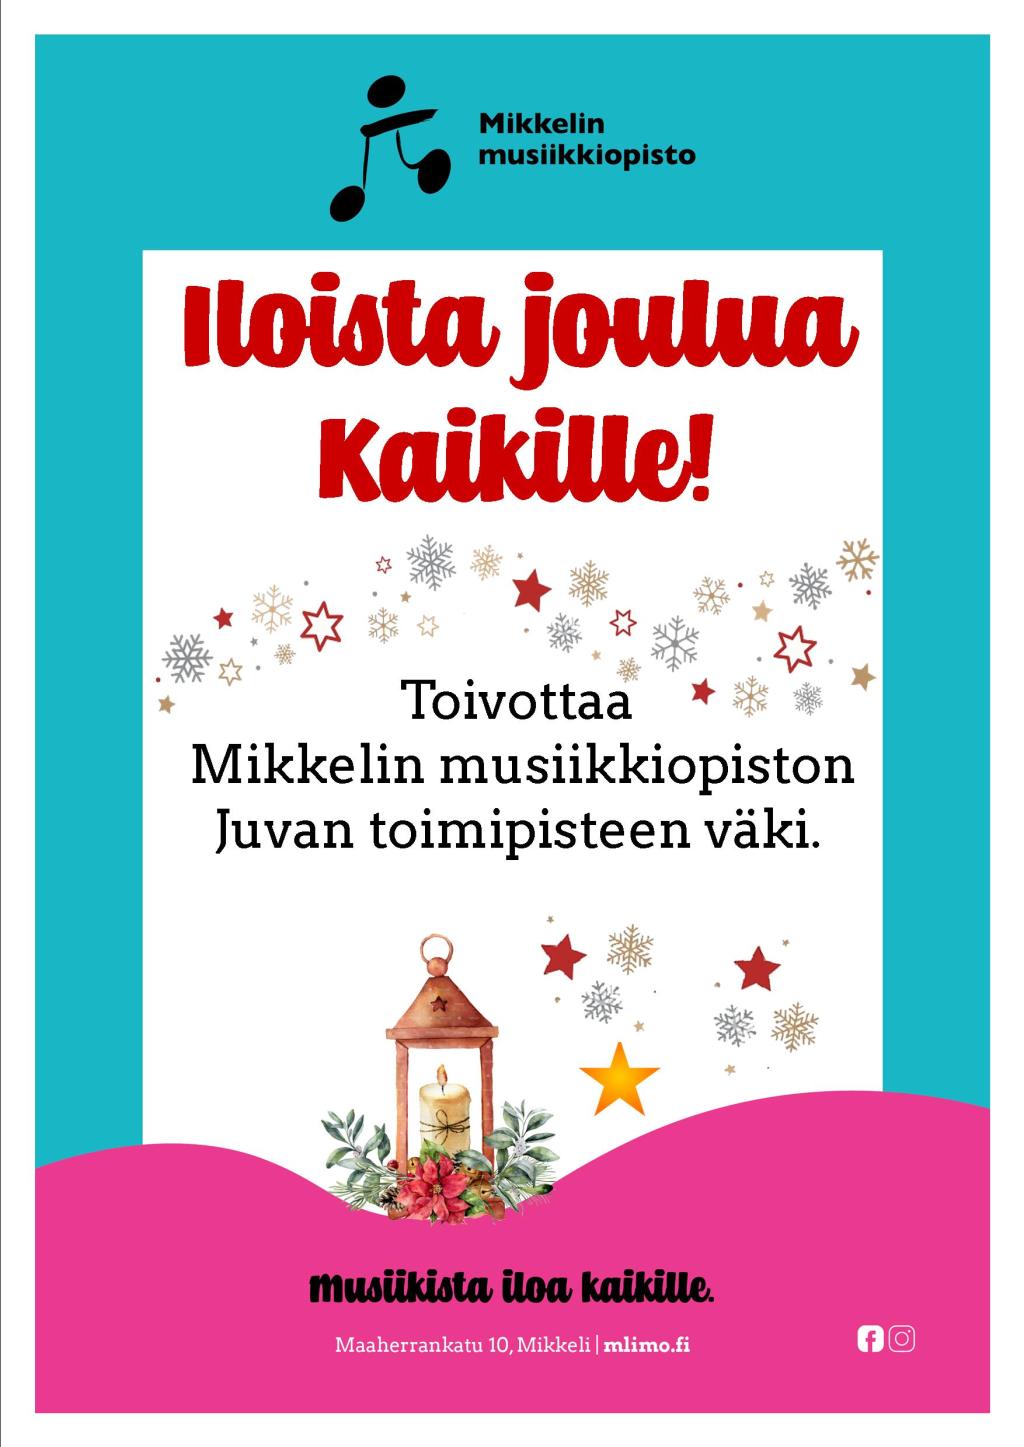 Mikkelin musiikkiopiston Juvan toimipisteen iloinen joulutervehdys